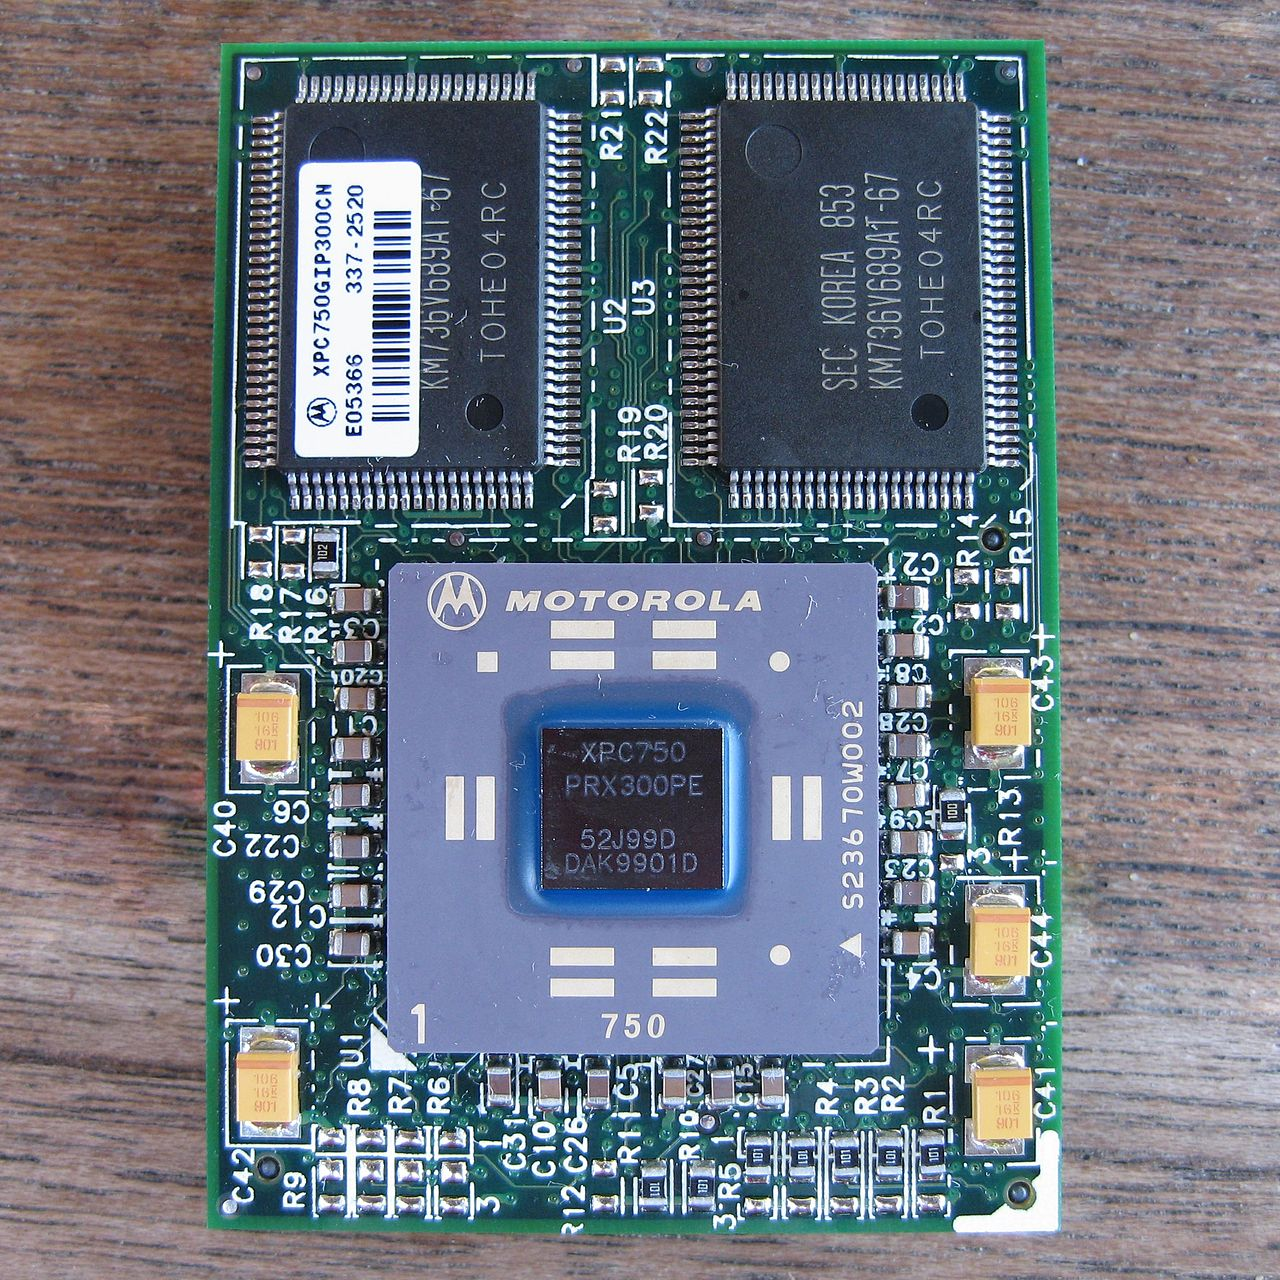 POWERPC g3 процессор. POWERPC 603e. IBM POWERPC g4. POWERPC 750. Процессоры ibm